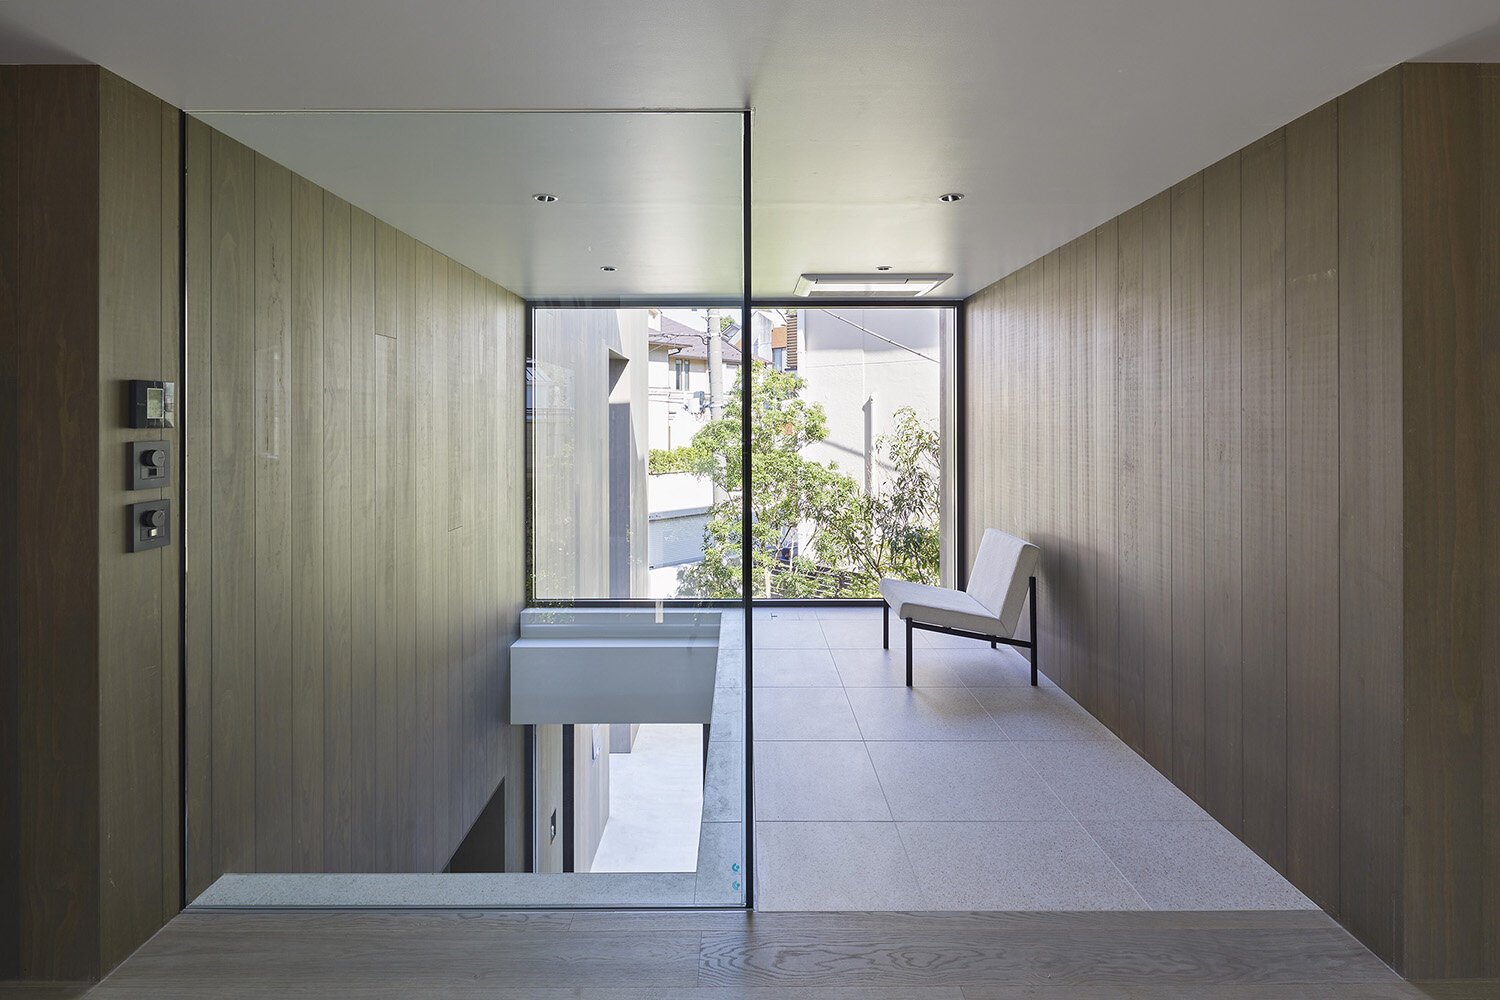  建築家 sinatoシナトの大野力が設計した住宅Shoto S。2階のインテリアデザイン 